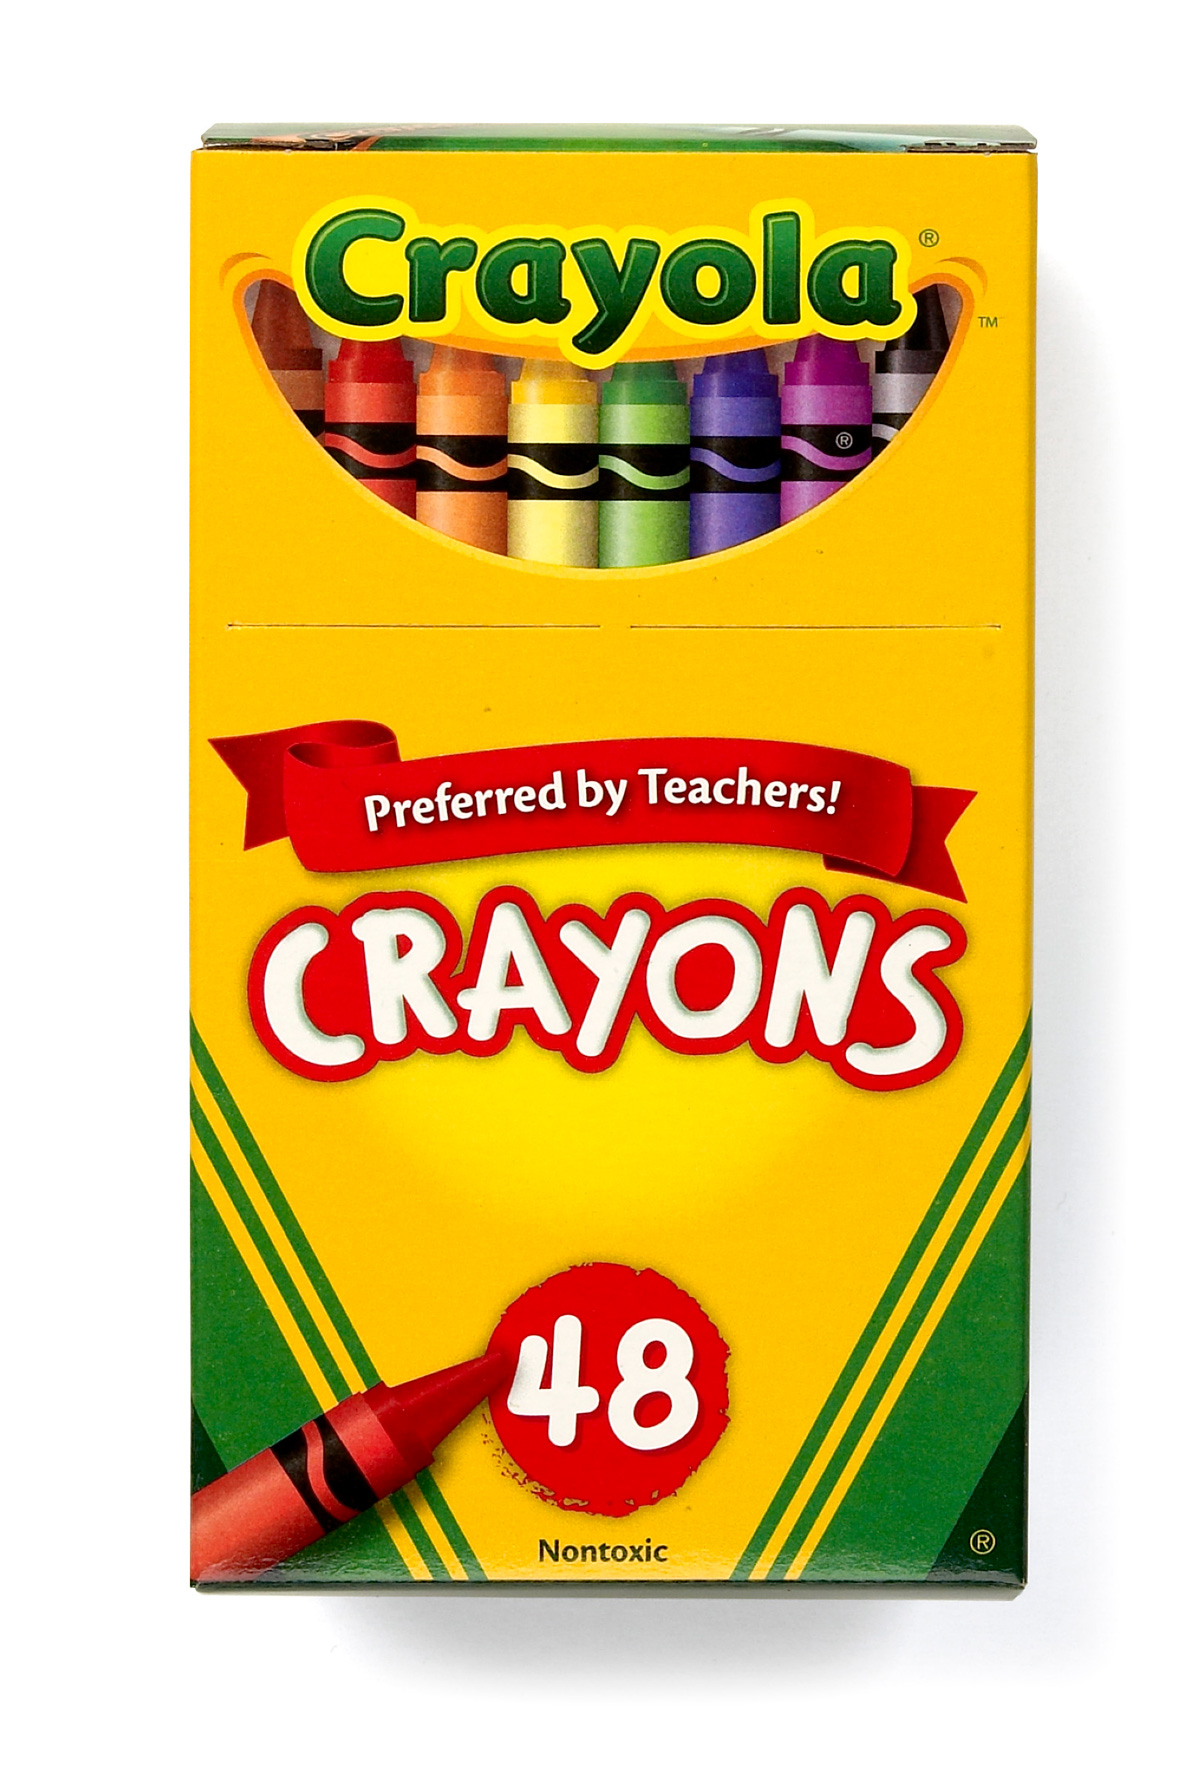 free-16-crayon-box-cliparts-download-free-16-crayon-box-cliparts-png